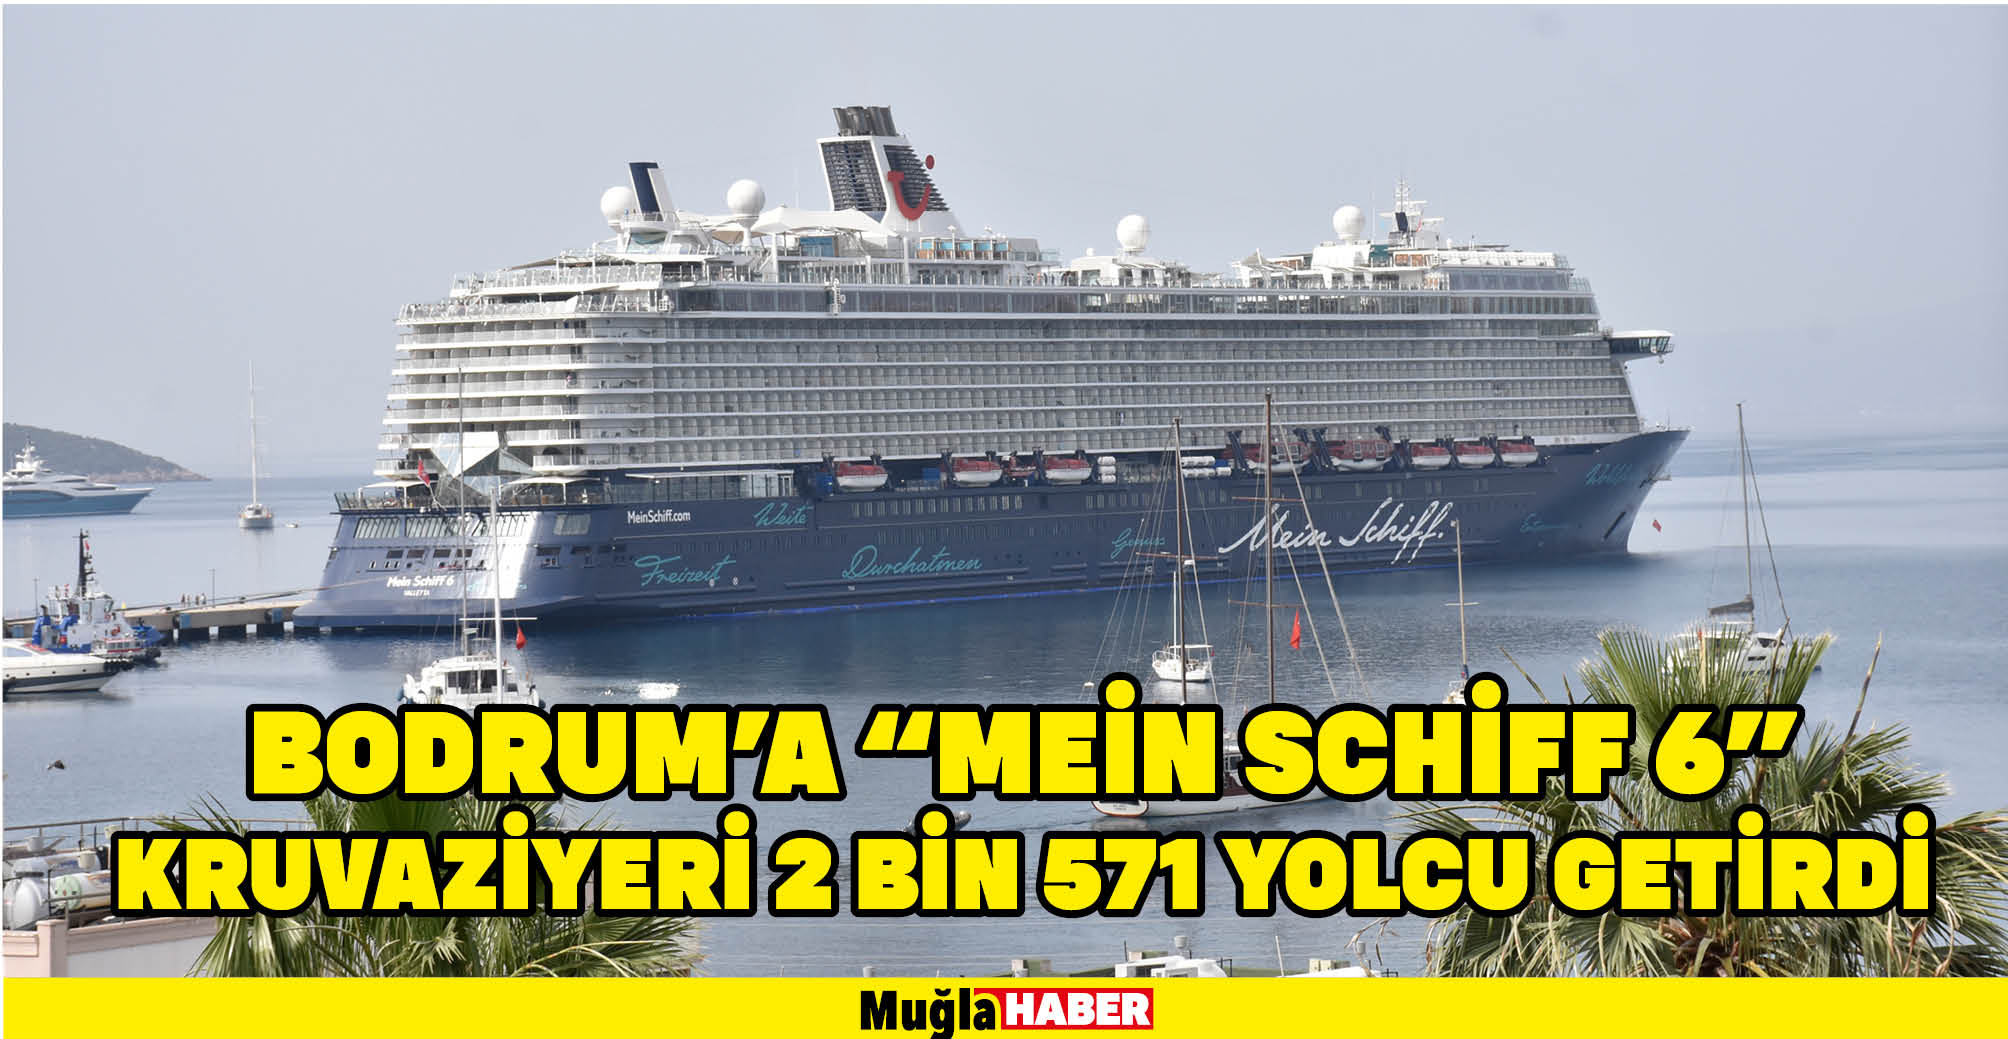 Bodrum'a "Mein Schiff 6" kruvaziyeri 2 bin 571 yolcu getirdi